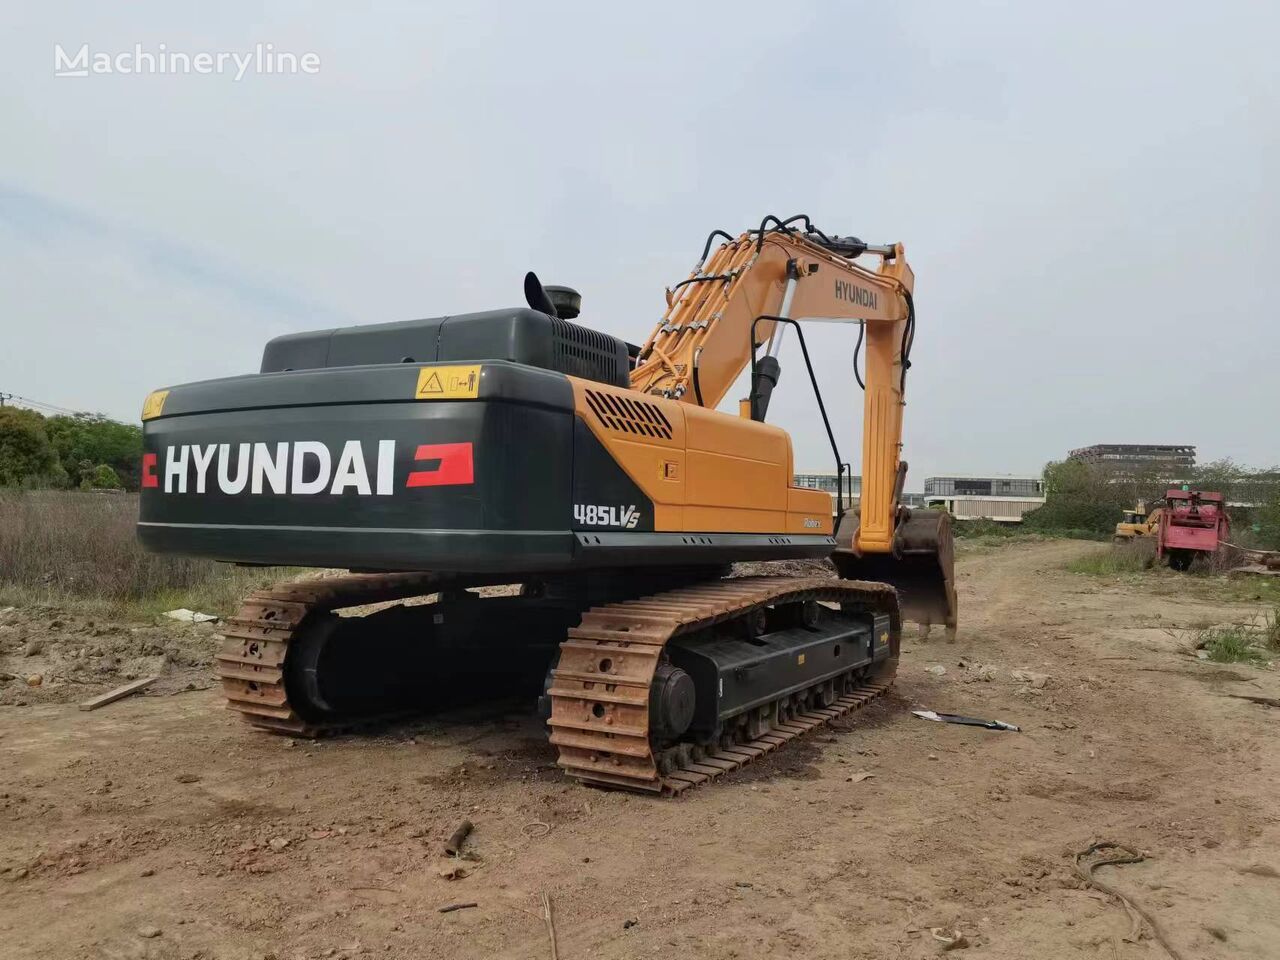 Hyundai 485lvs excavadora de cadenas